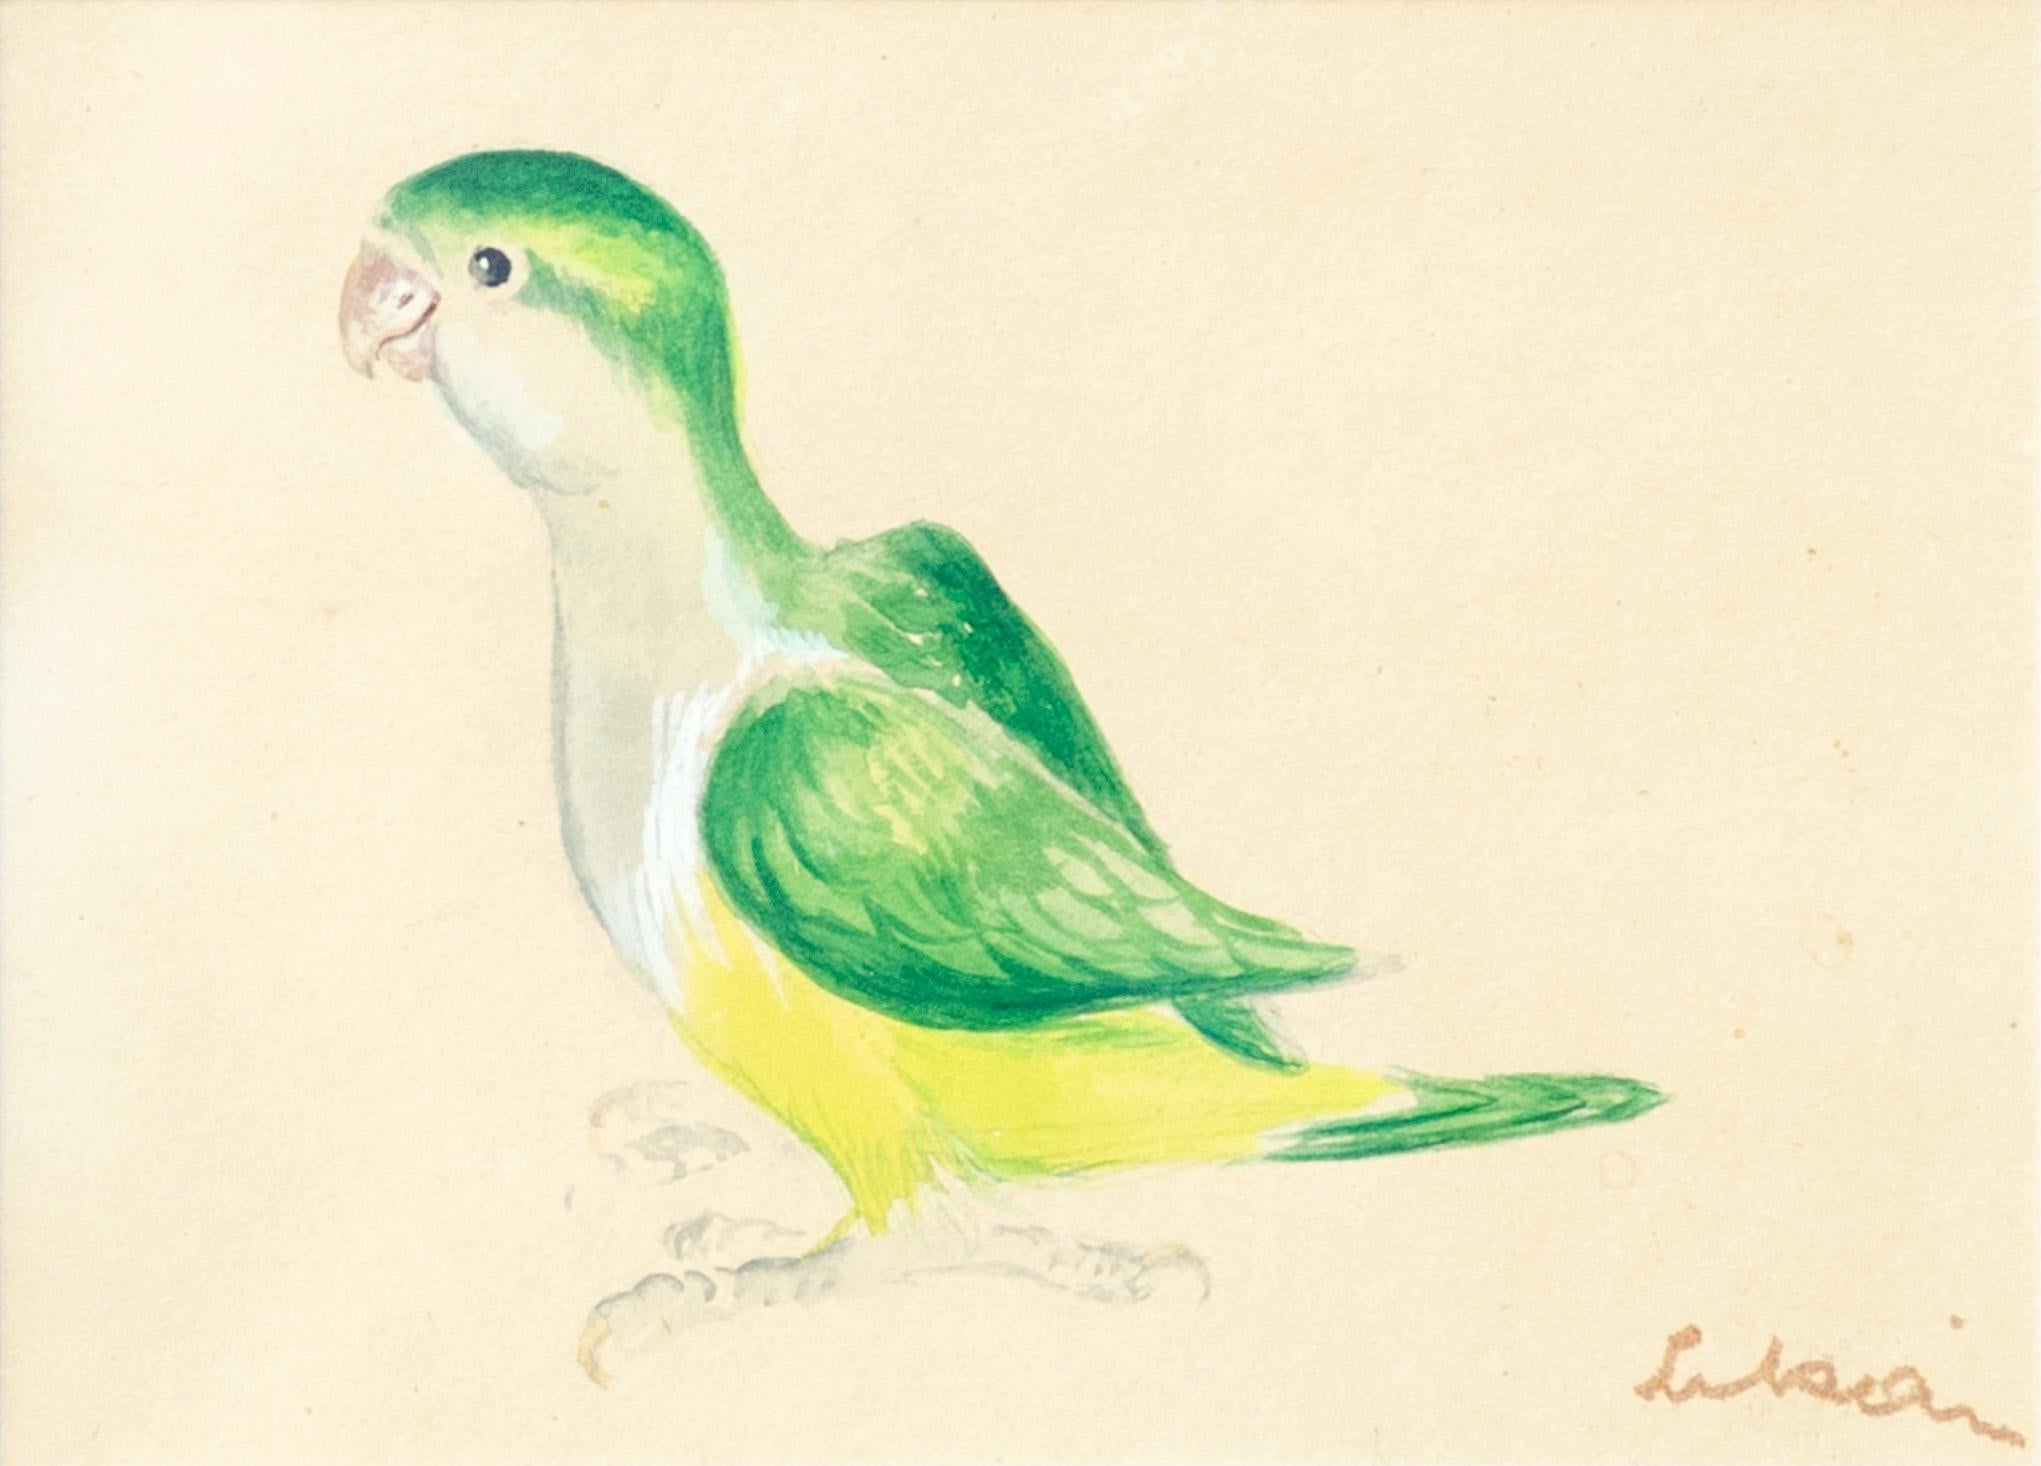 Gustav Likan Animal Painting - "Monk Parakeet" Eva Peron Mural Sketch